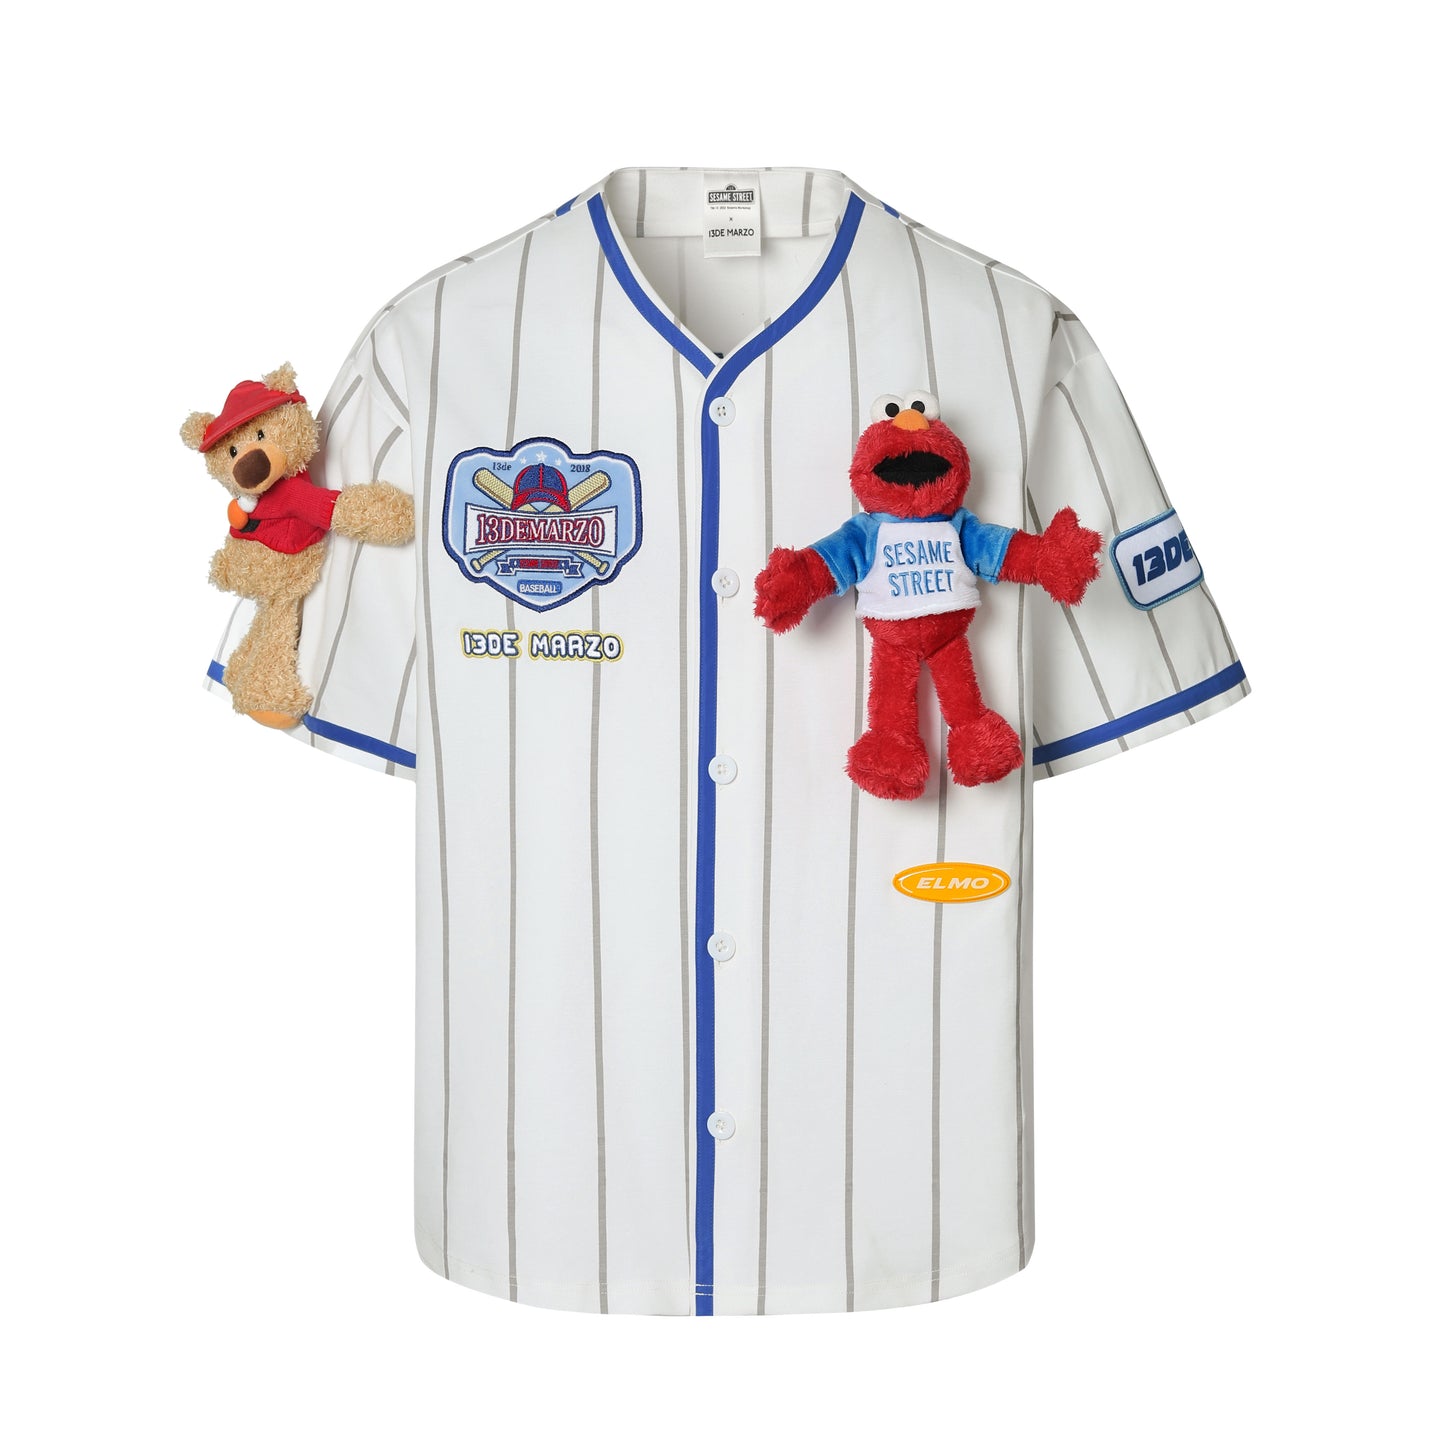 13DE MARZO Elmo Baseball Shirt